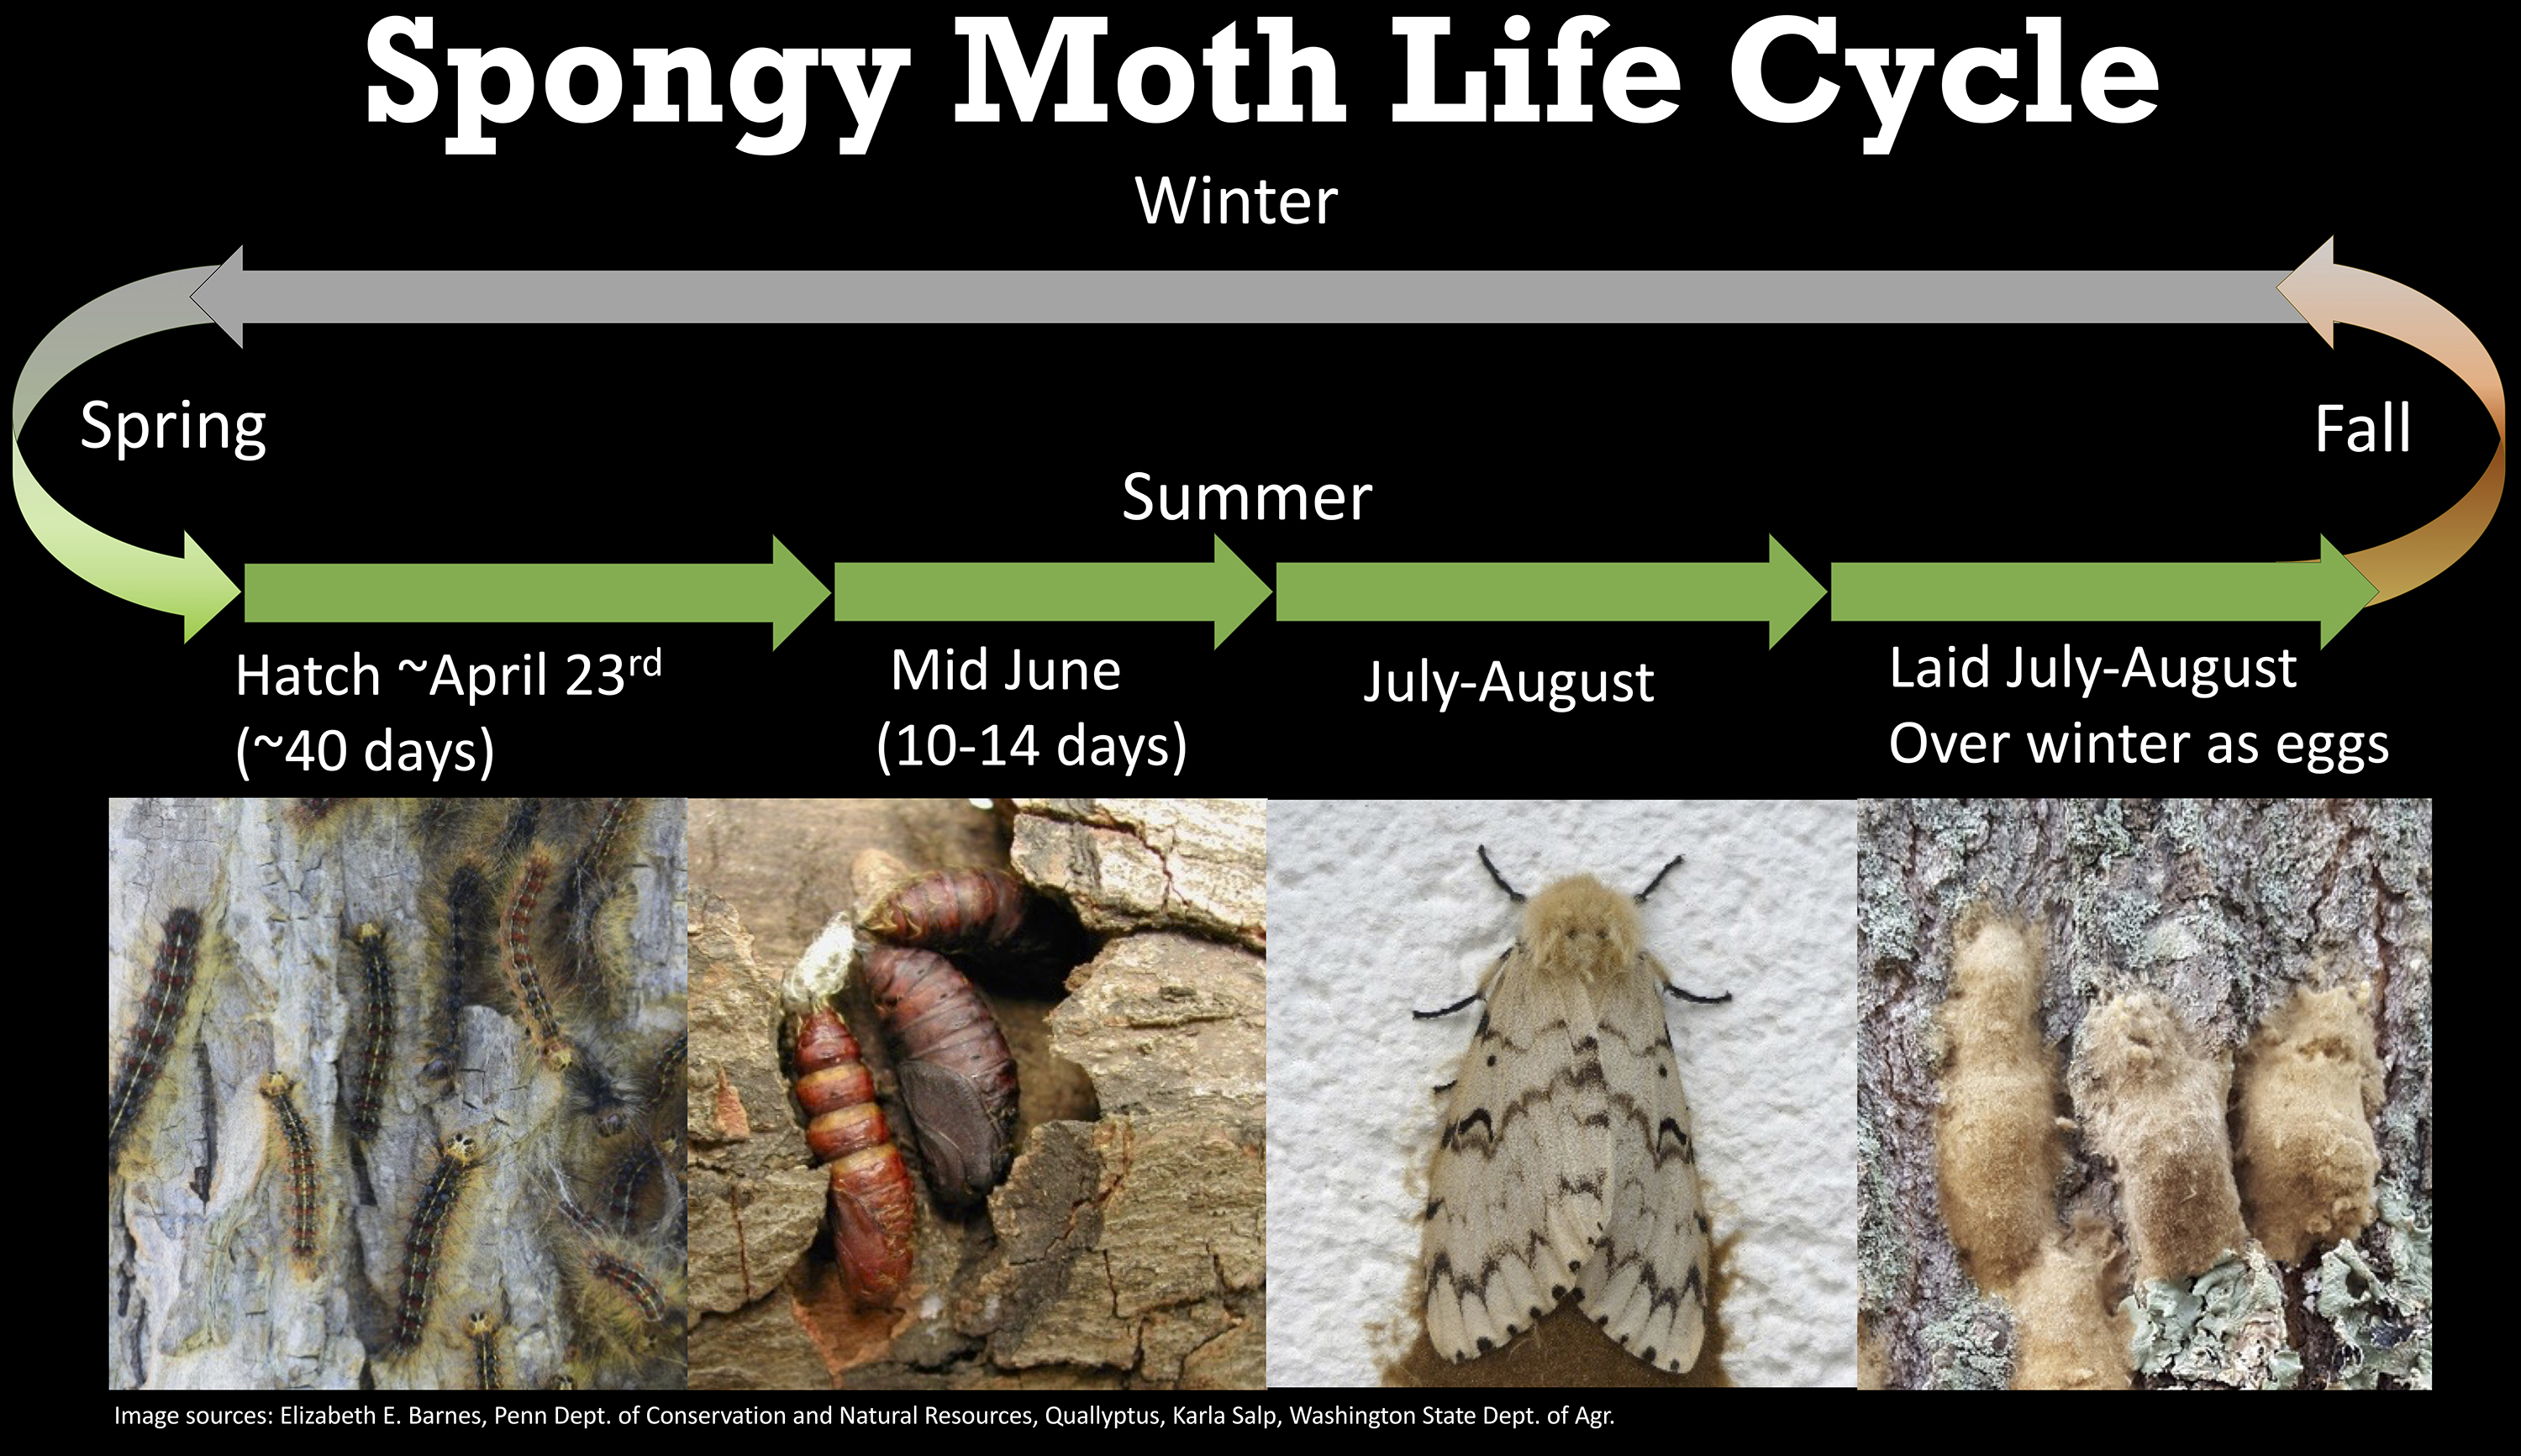 Gypsy Moth Life Cycle